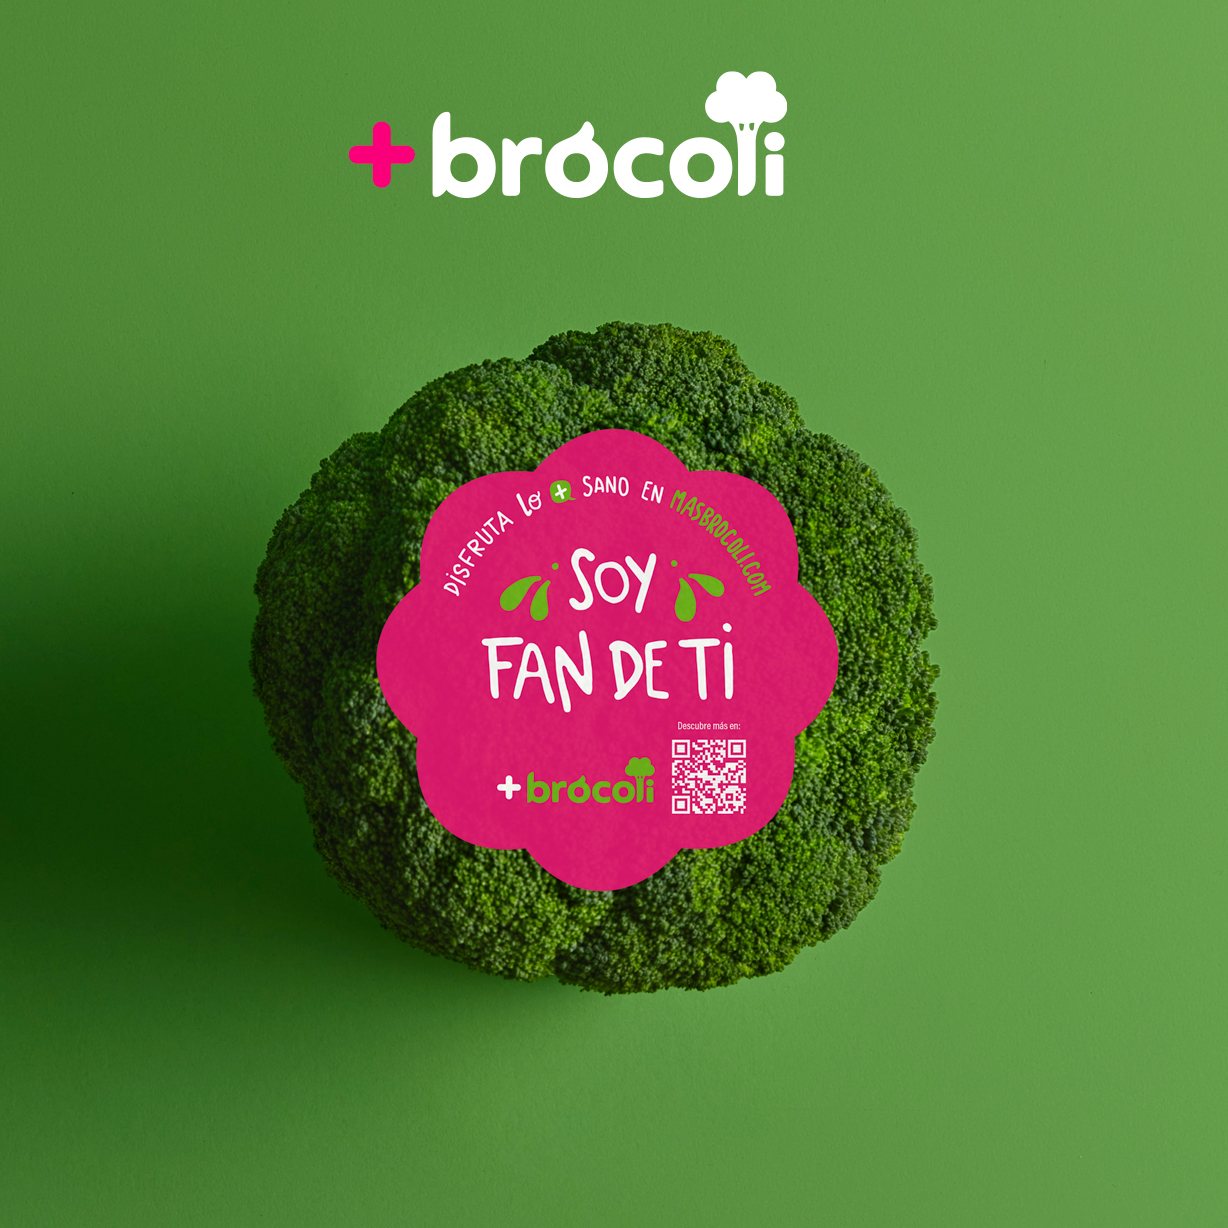 Proexport se suma a la campaña ‘Soy Fan de ti’ para animar al consumo de brócoli